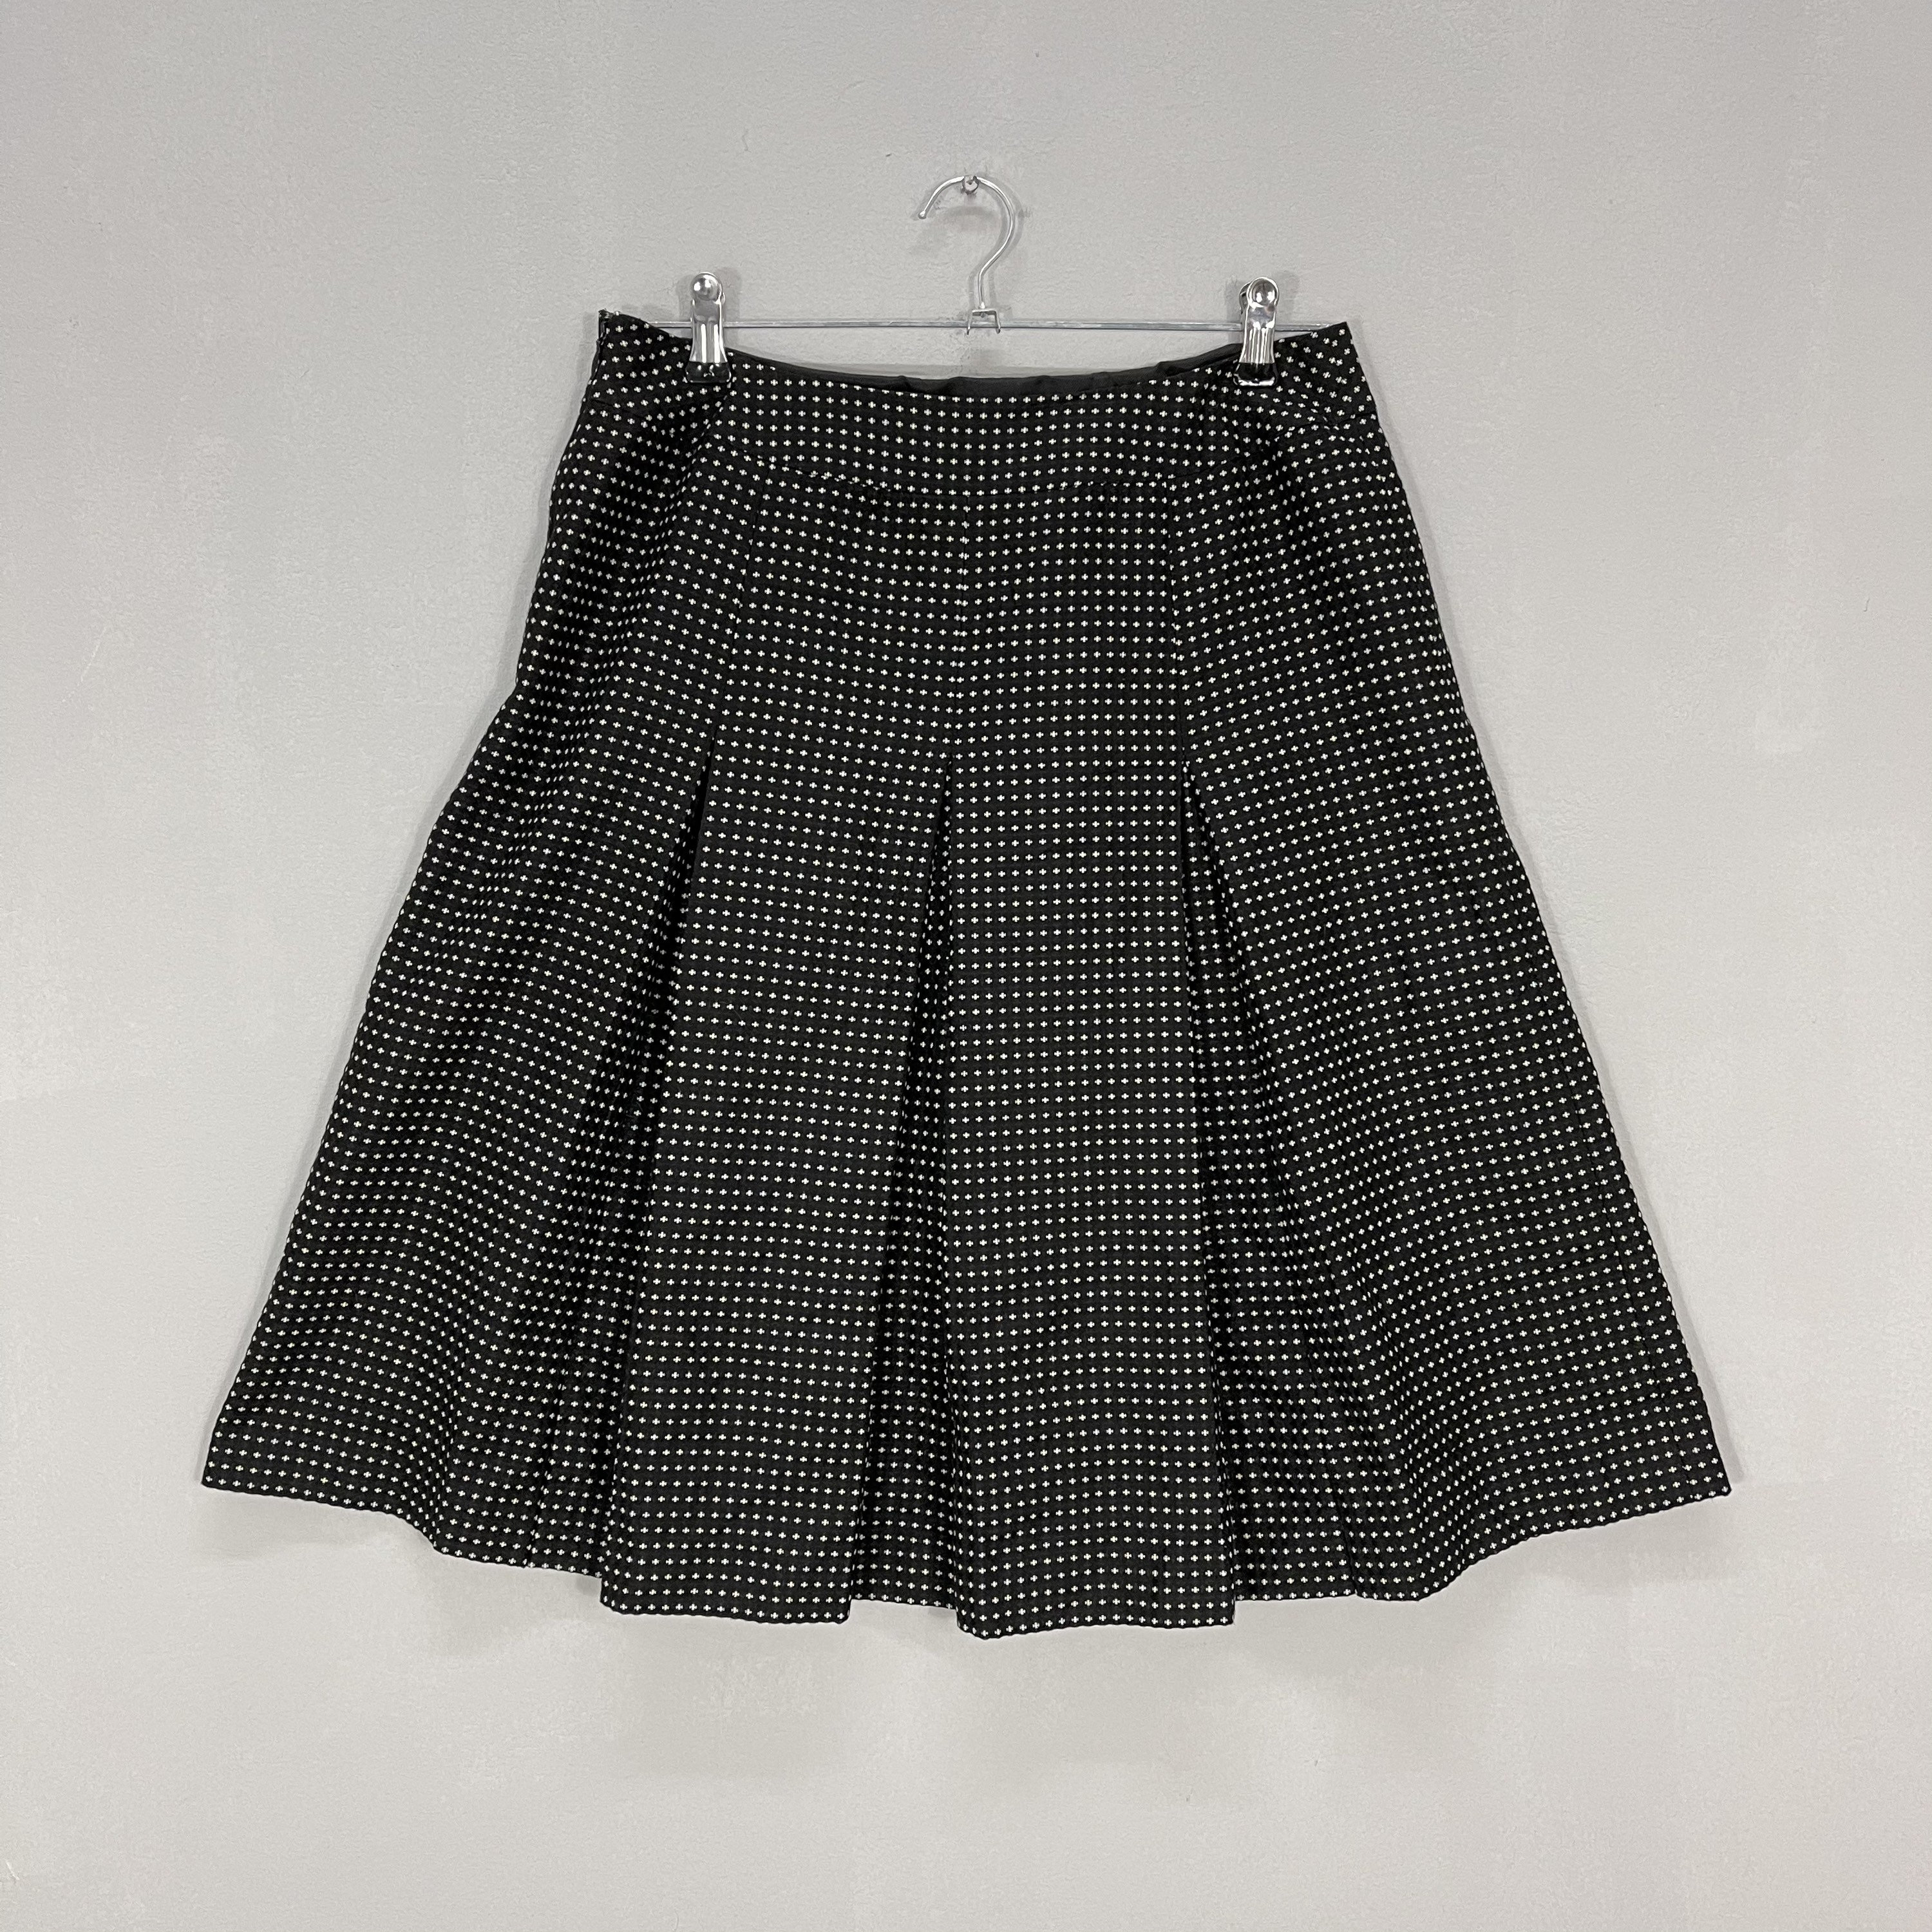 Vintage Box Pleats Skirt Short Skirt Plaid Skirt Pleat Skirt | Etsy